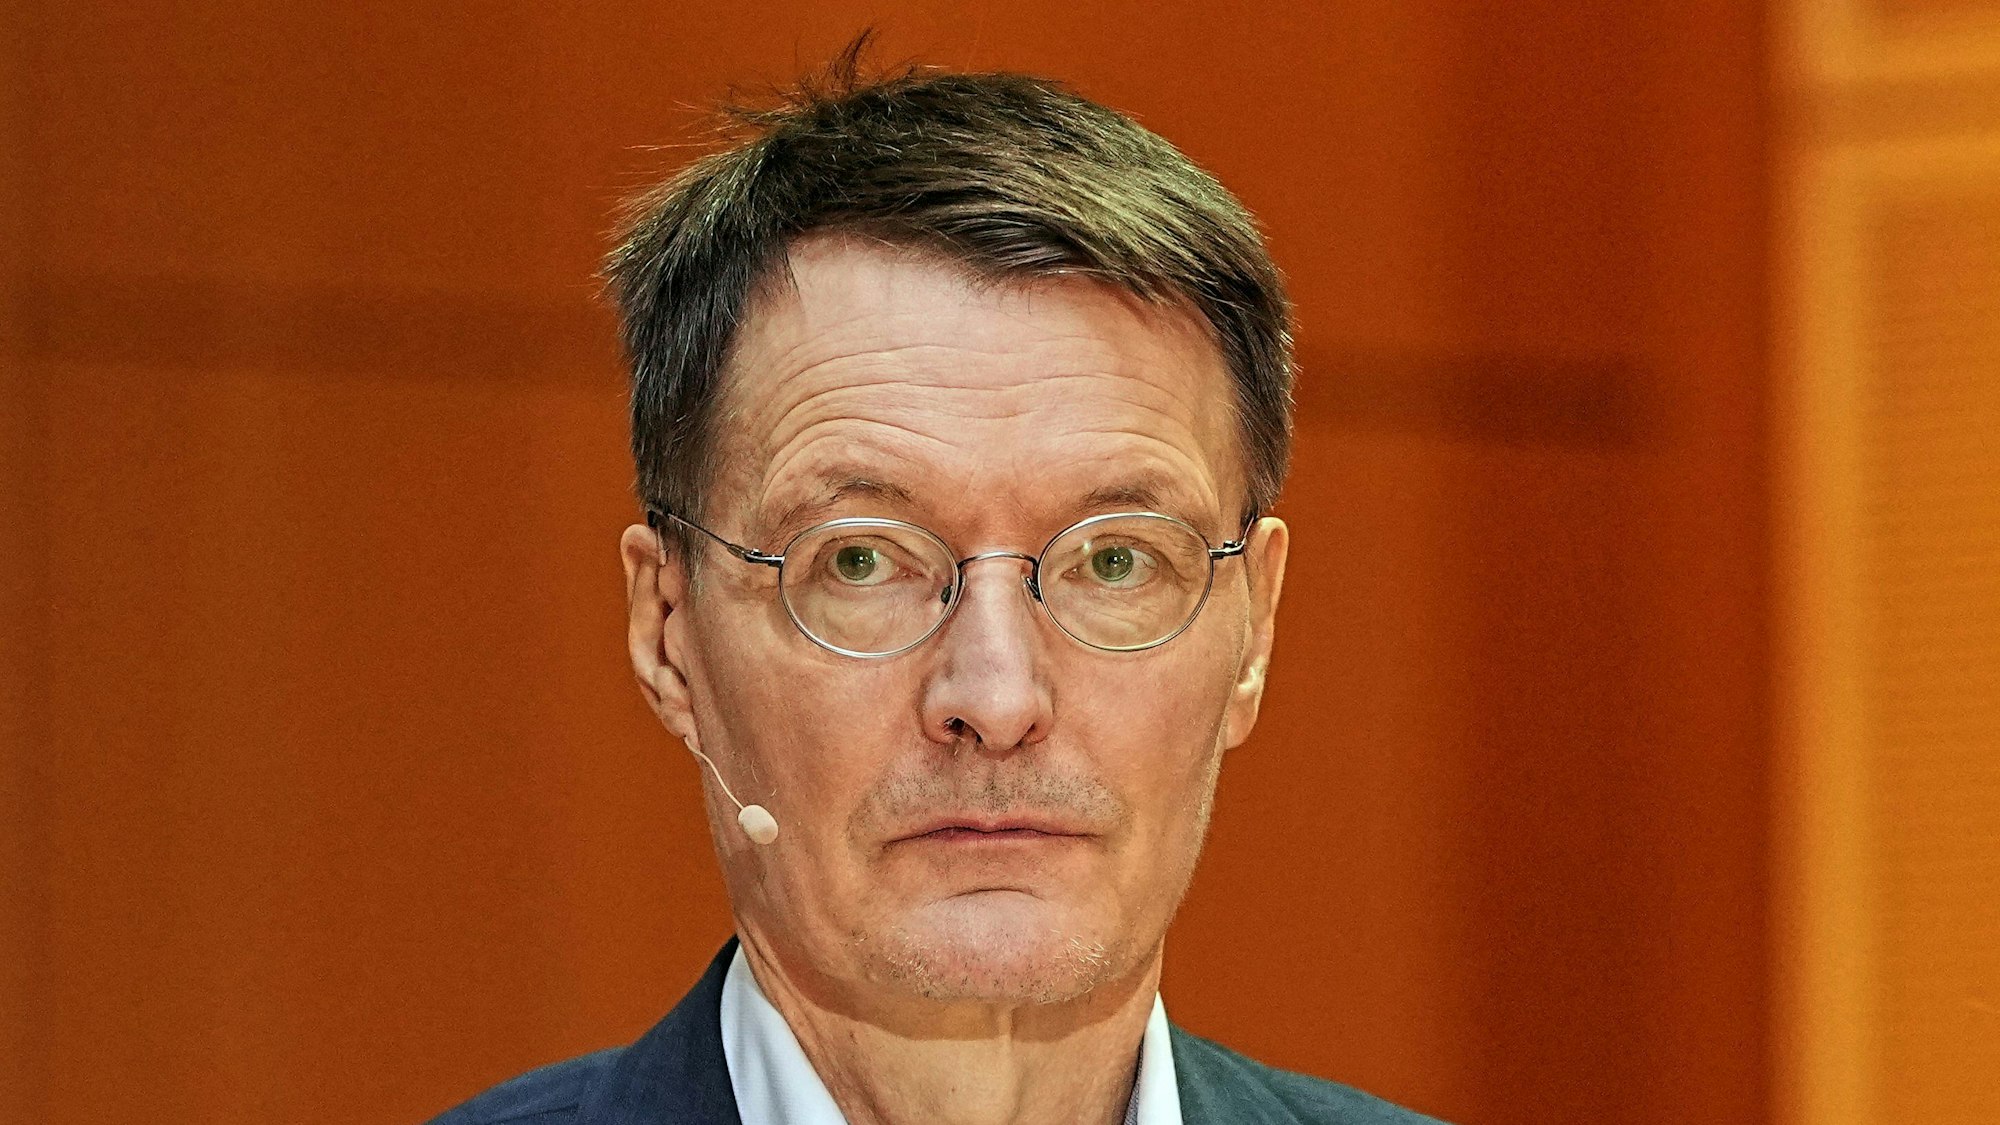 Gesundheitsexperte Karl Lauterbach (SPD) am 6. Dezember 2021